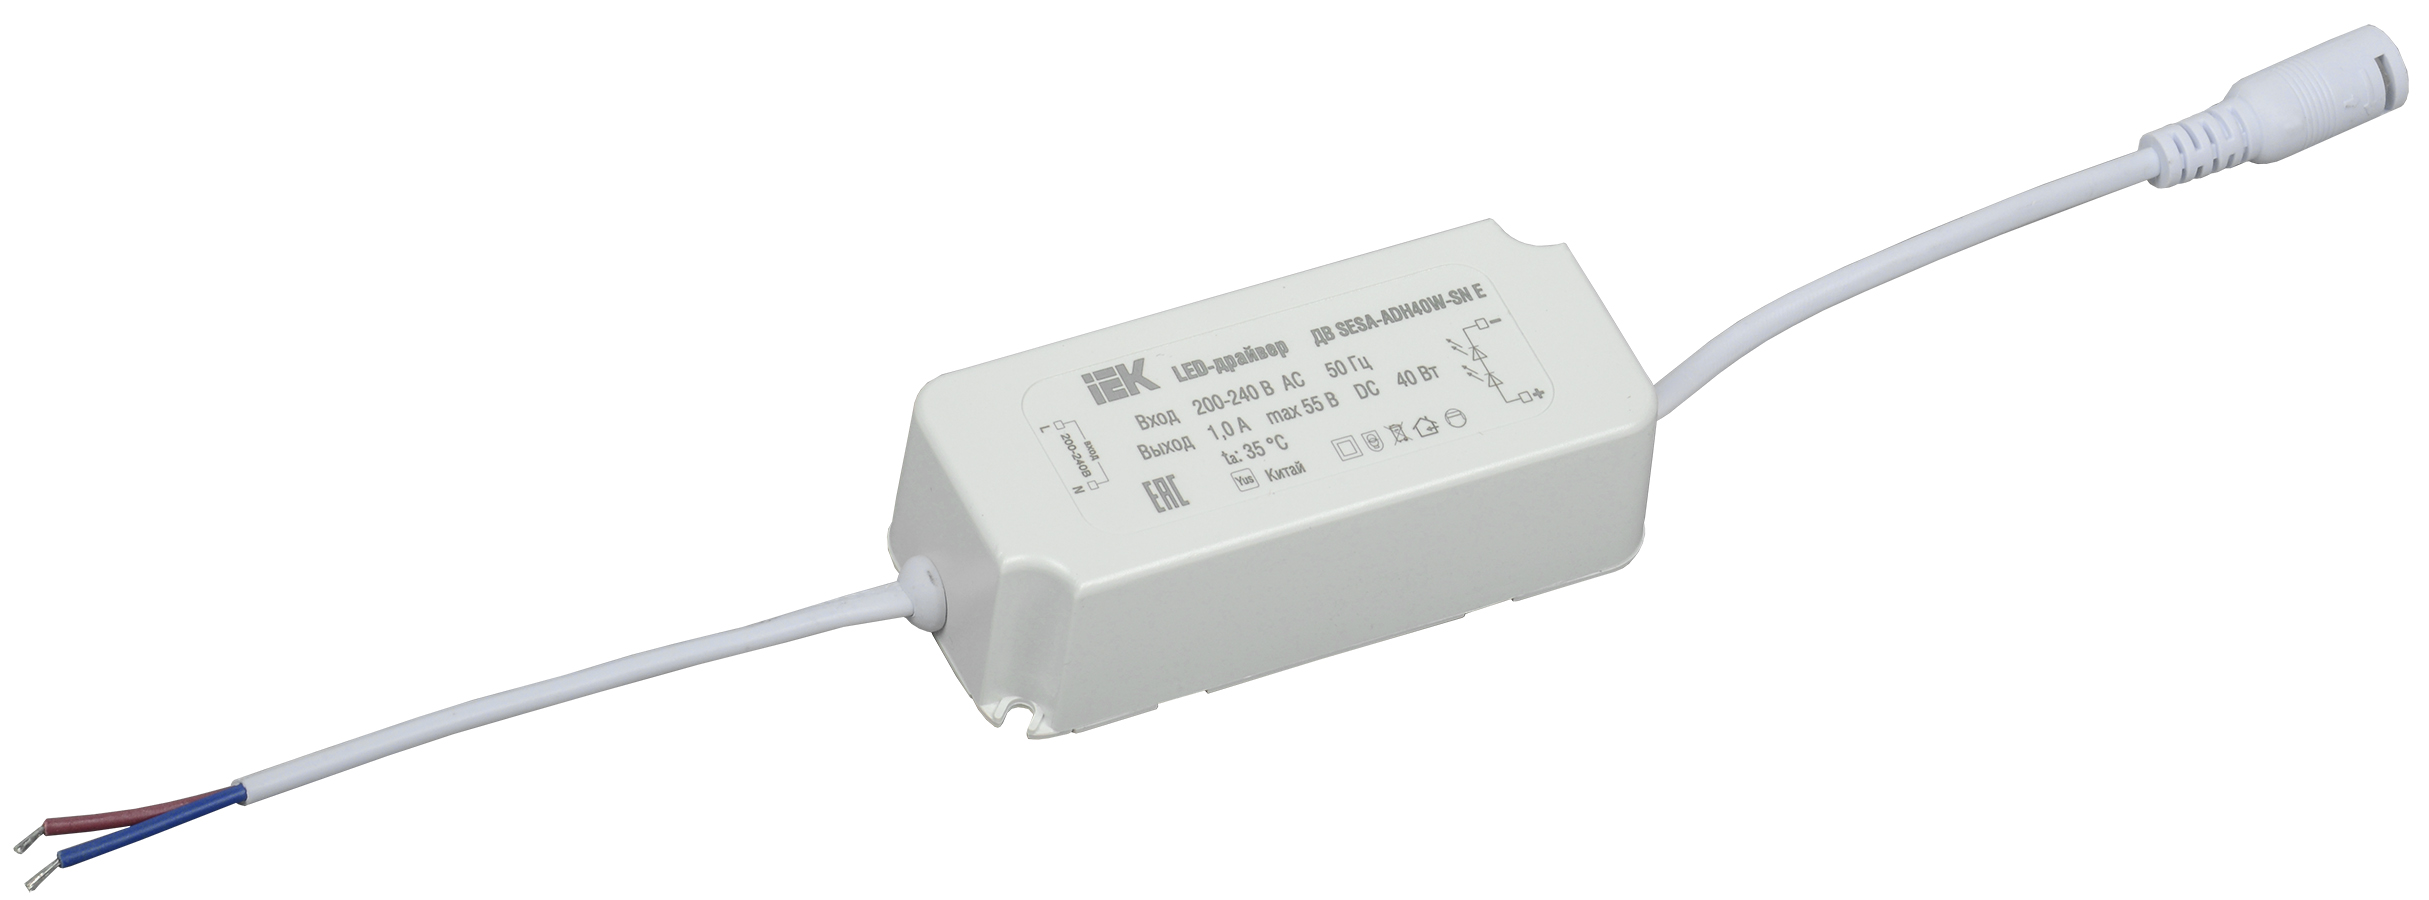 IEK LED-драйвер тип ДВ SESA-ADH40W-SN Е, для LED светильников 40Вт